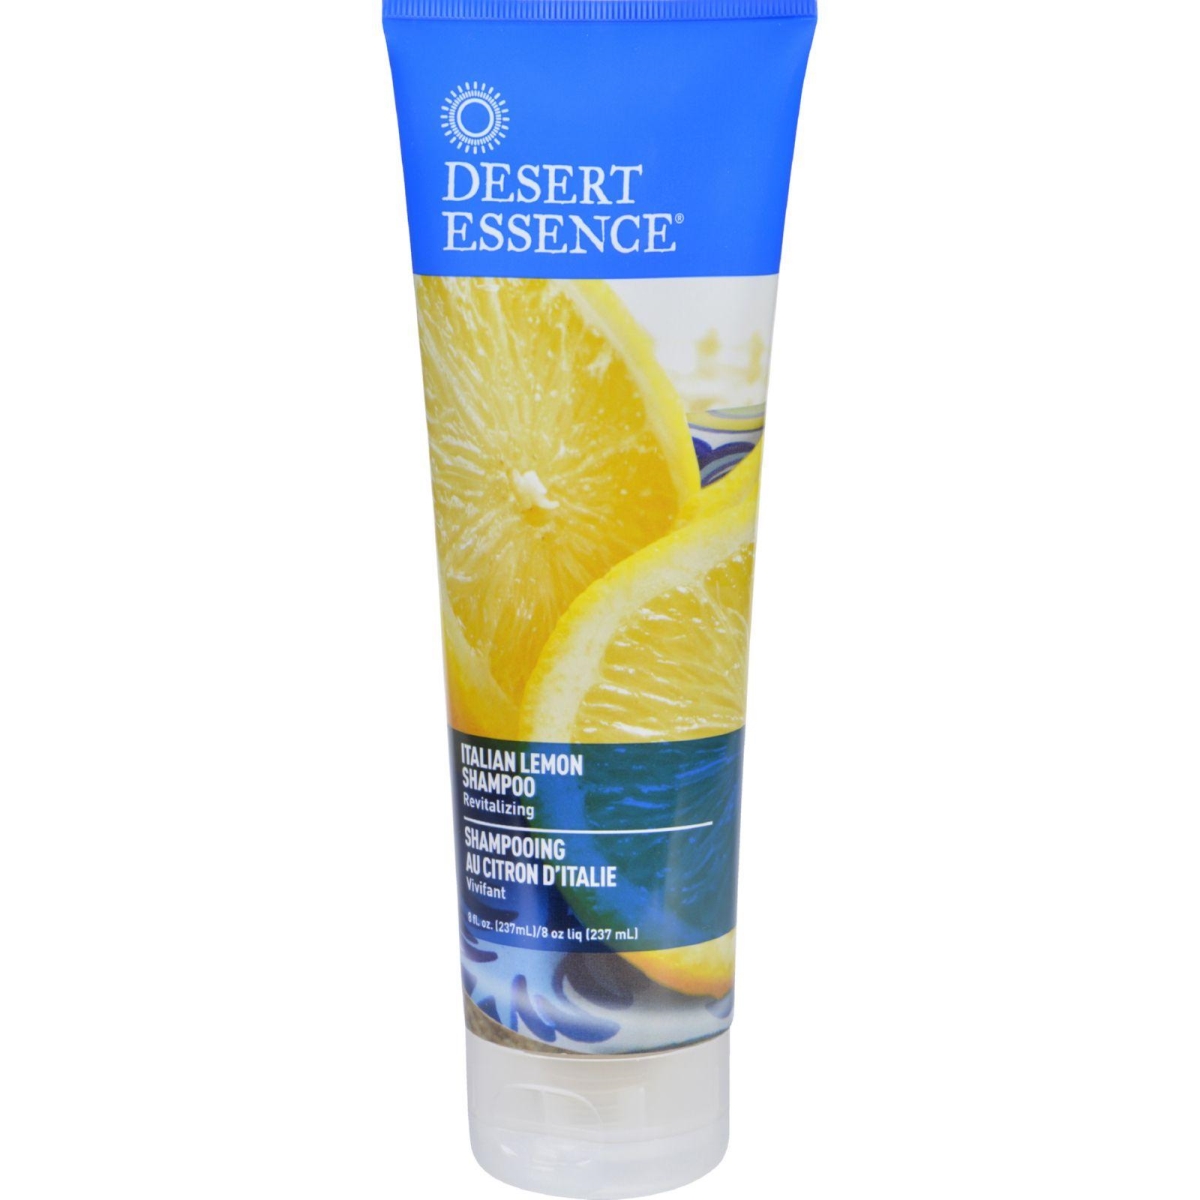 Hg1628304 8 Oz Italian Lemon Shampoo